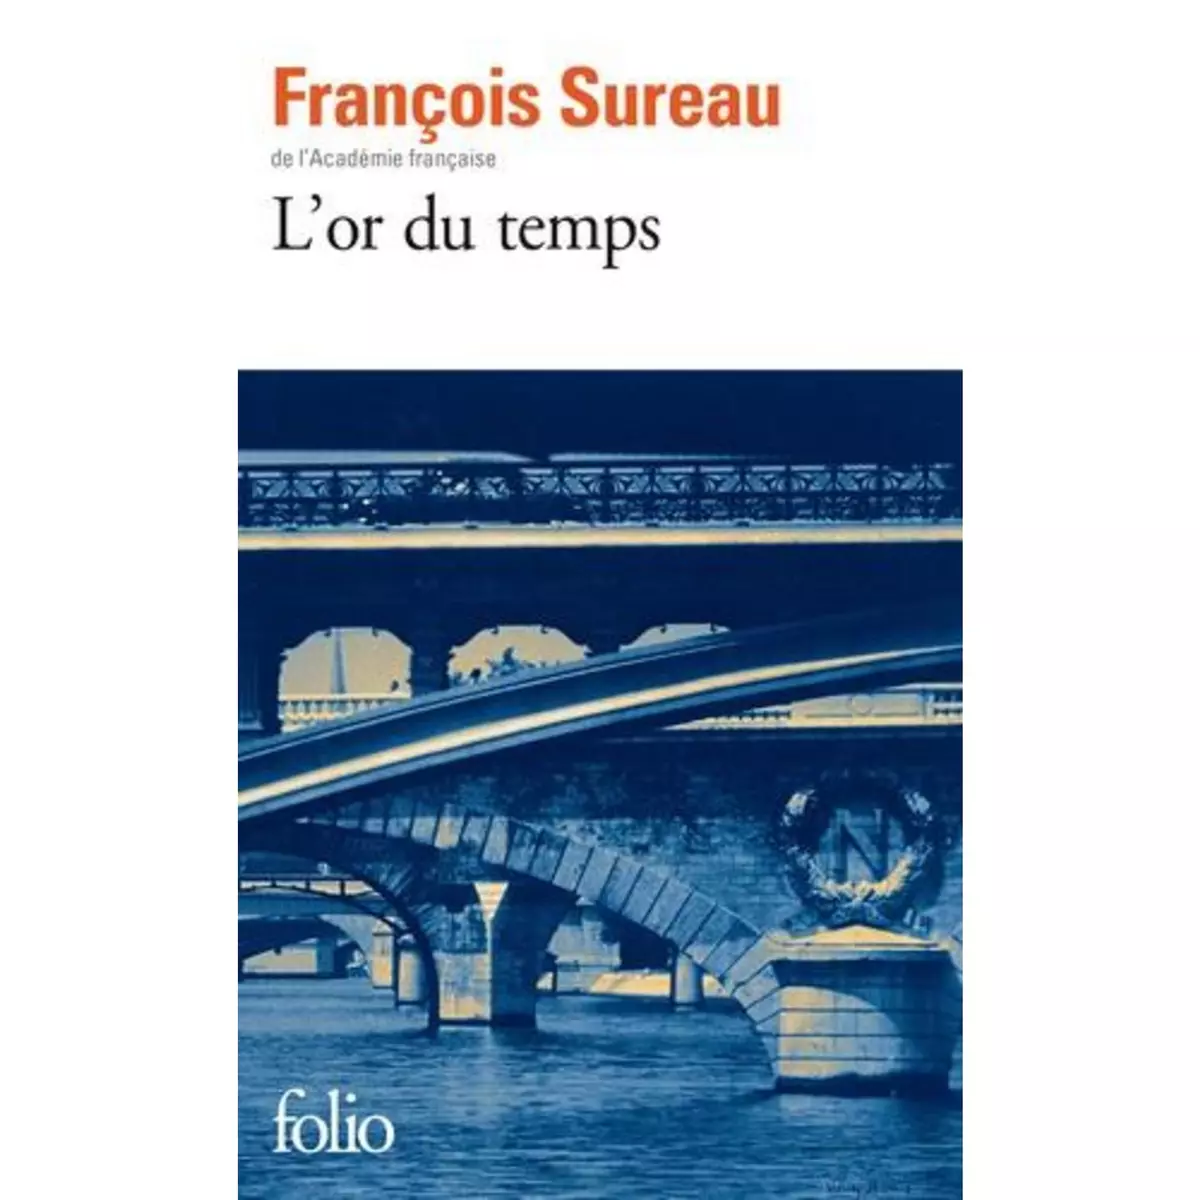  L'OR DU TEMPS, Sureau François